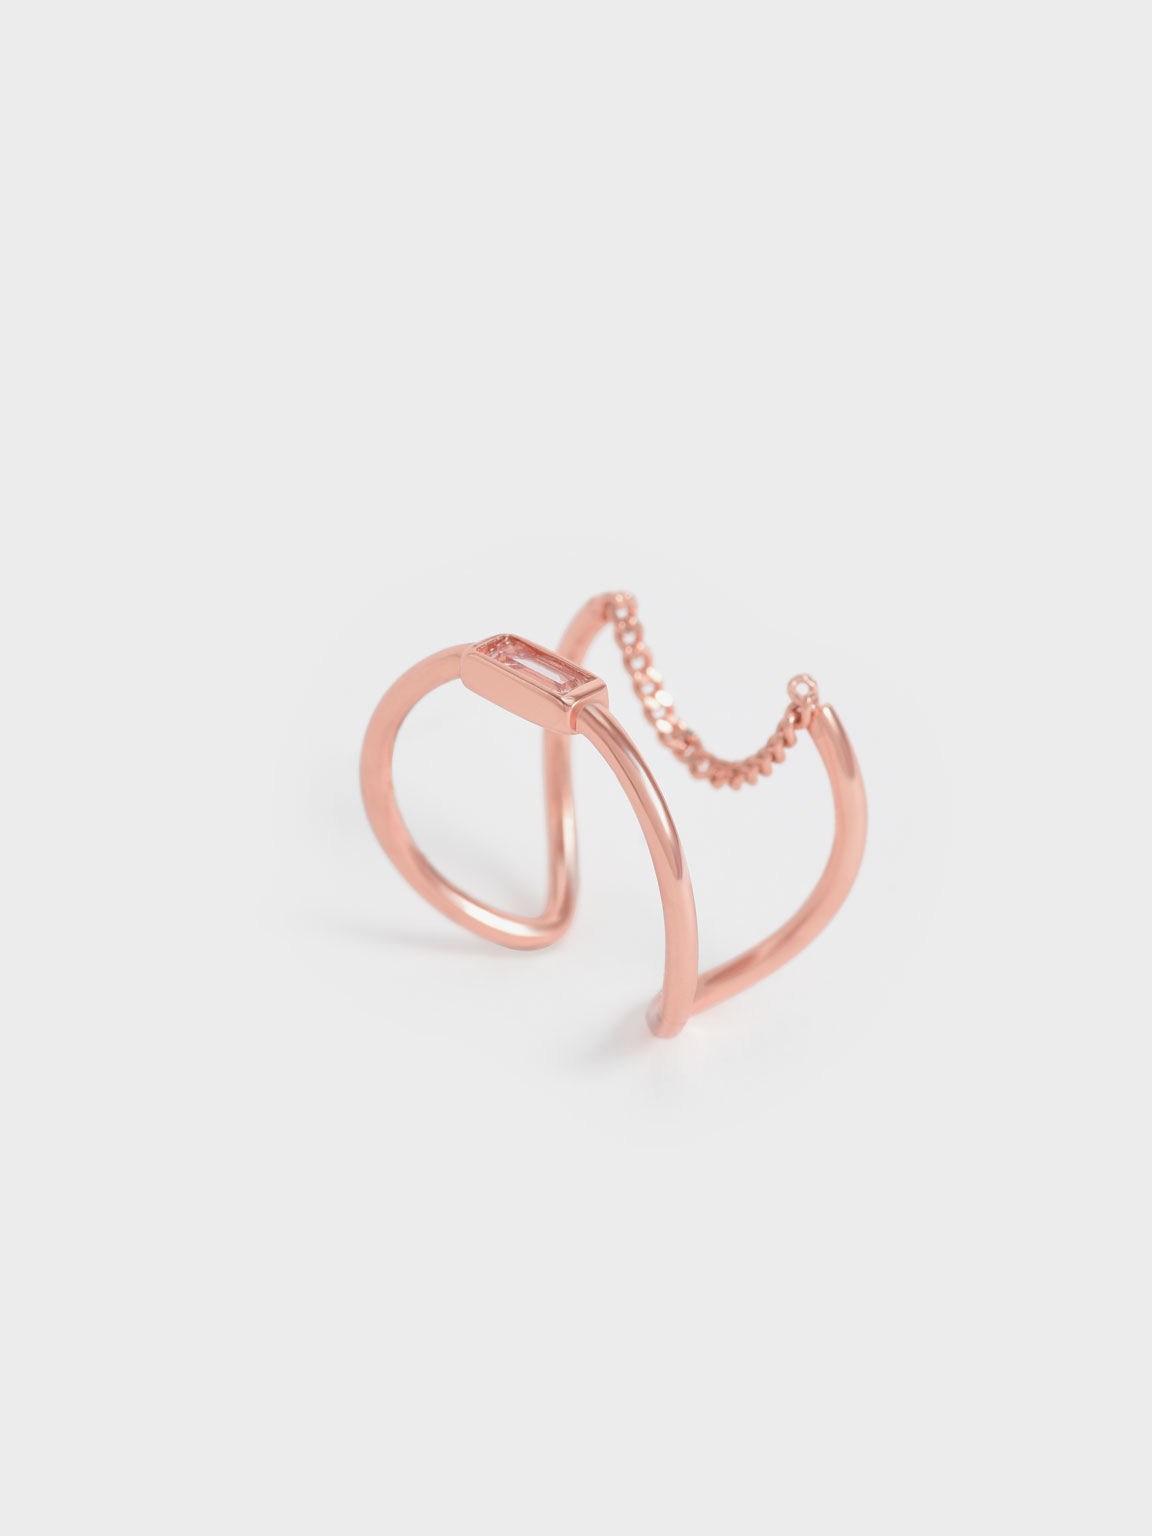 Crystal-Embellished Sculptural Ring, Rose Gold, hi-res